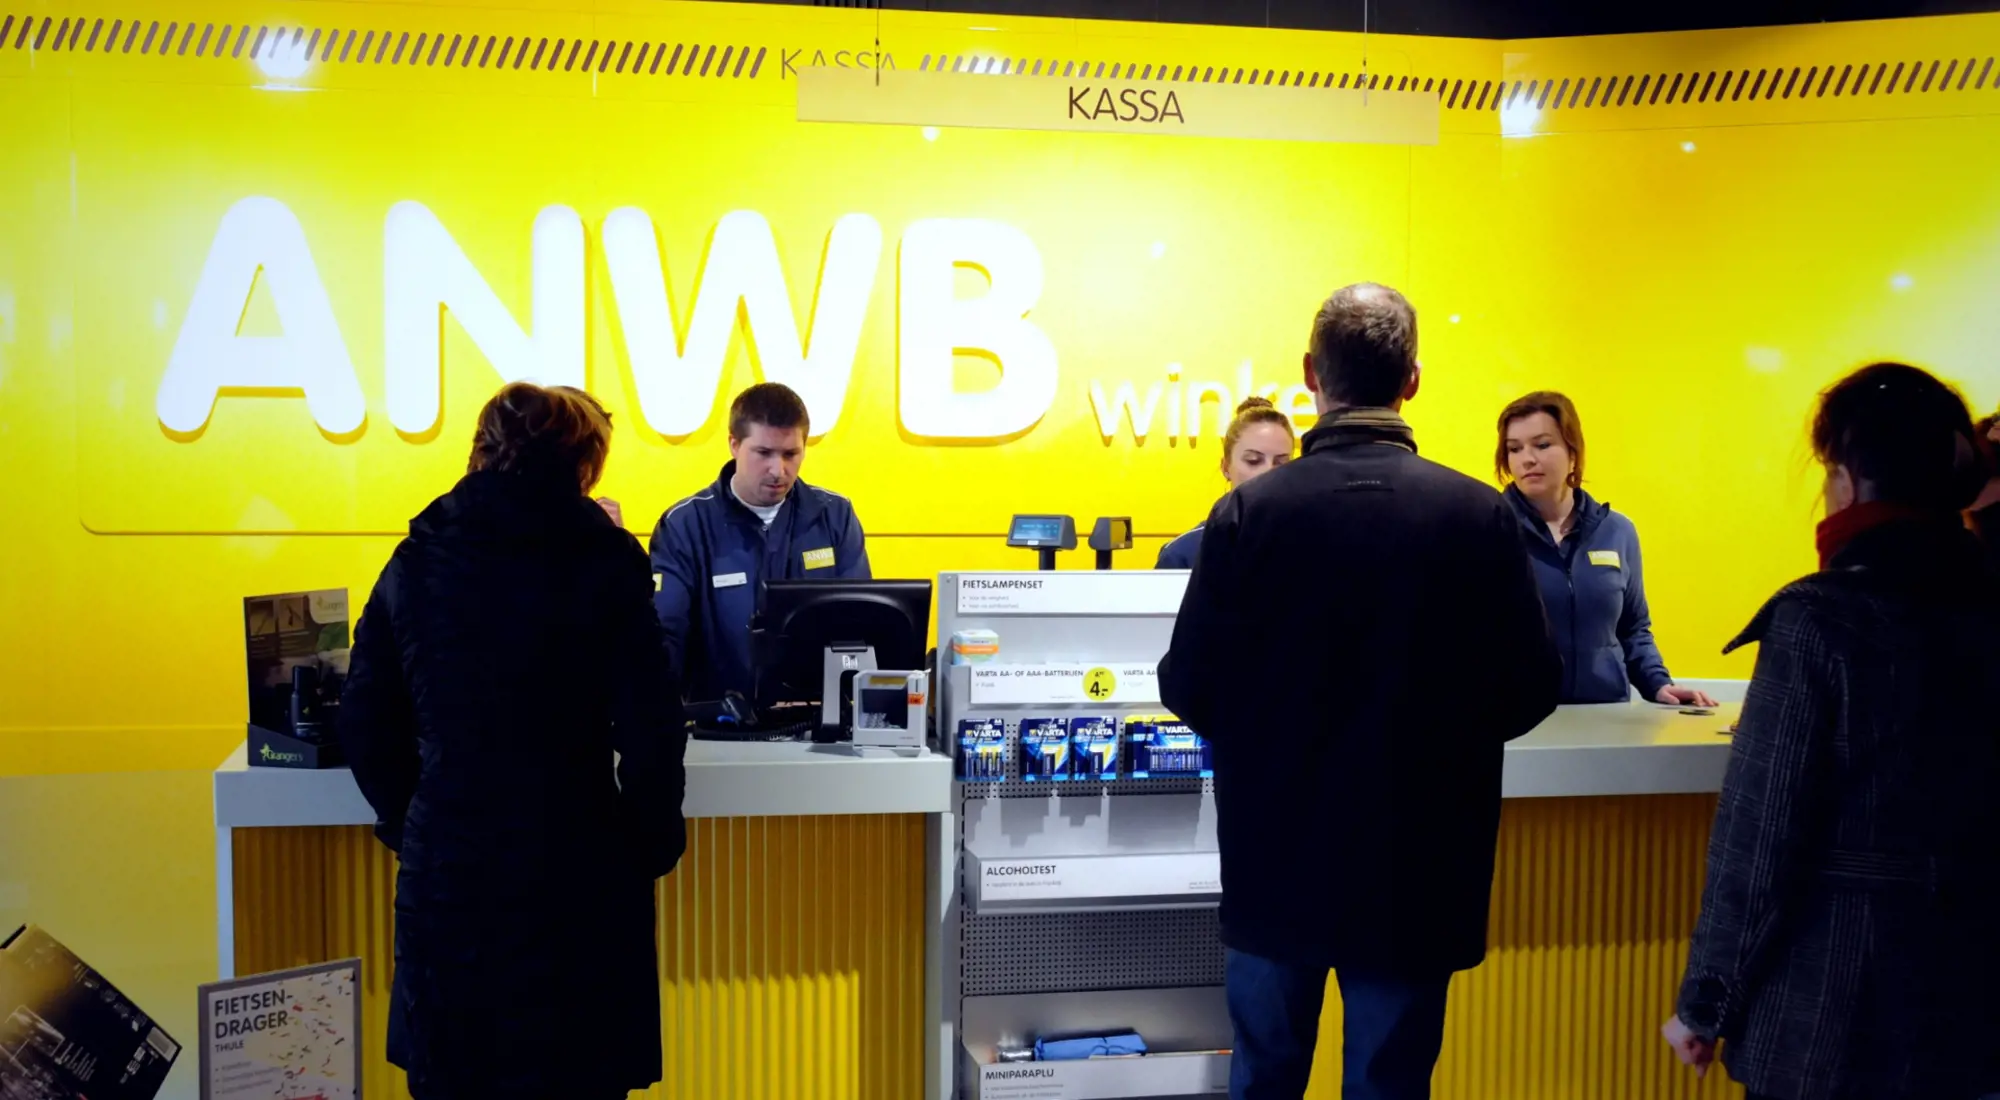 ANWB Winkels Nederland (1)